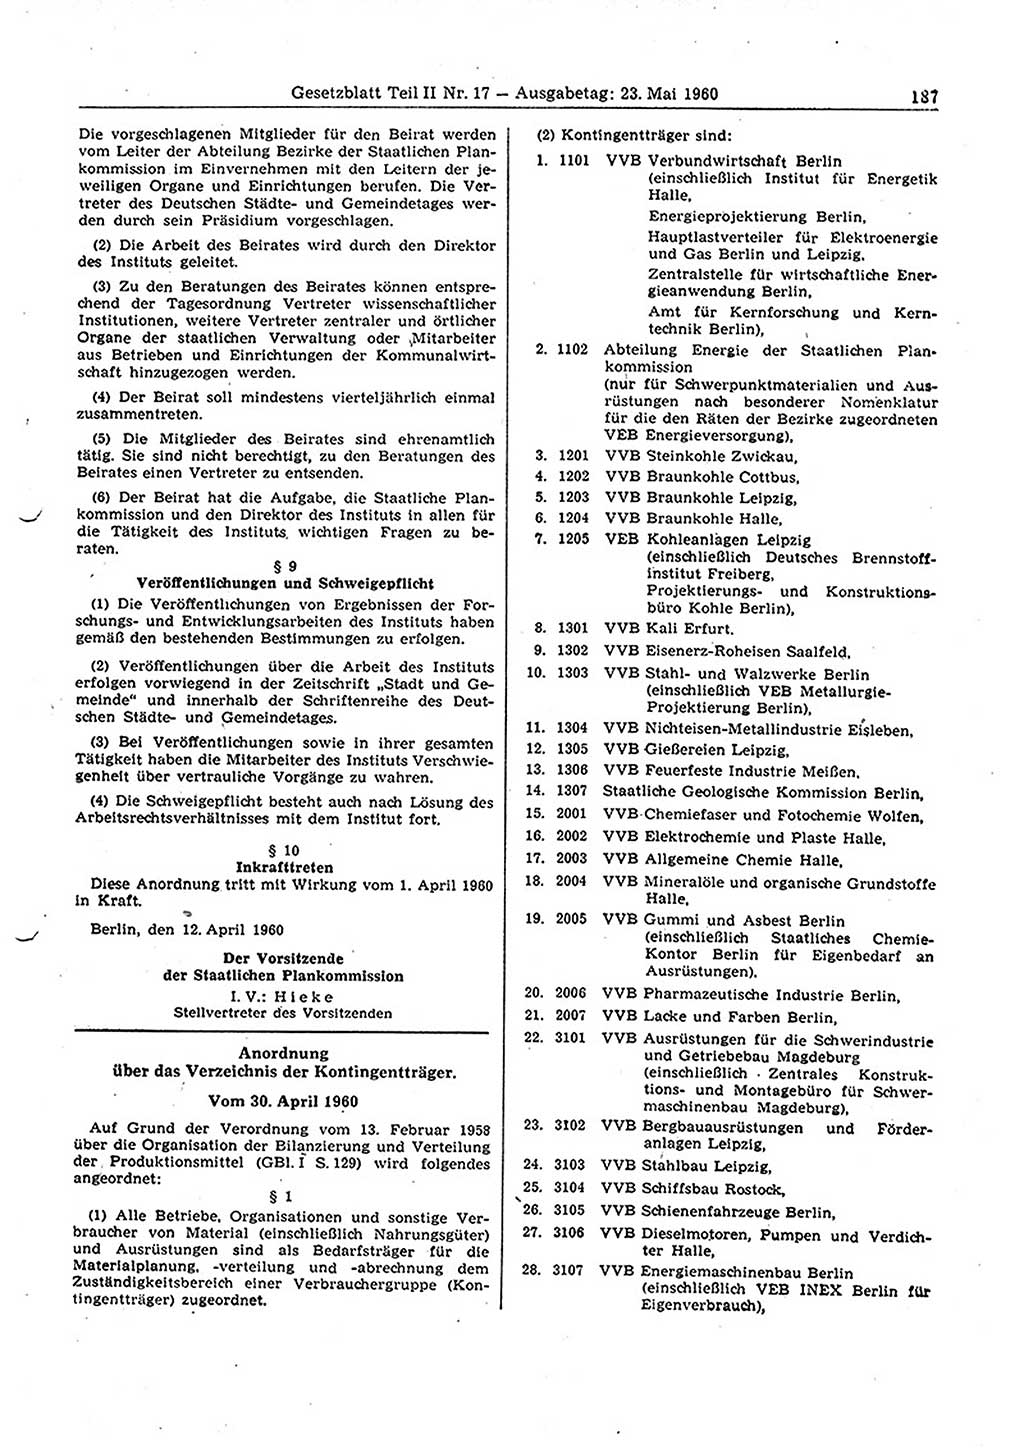 Gesetzblatt (GBl.) der Deutschen Demokratischen Republik (DDR) Teil â… â… 1960, Seite 187 (GBl. DDR â… â… 1960, S. 187)